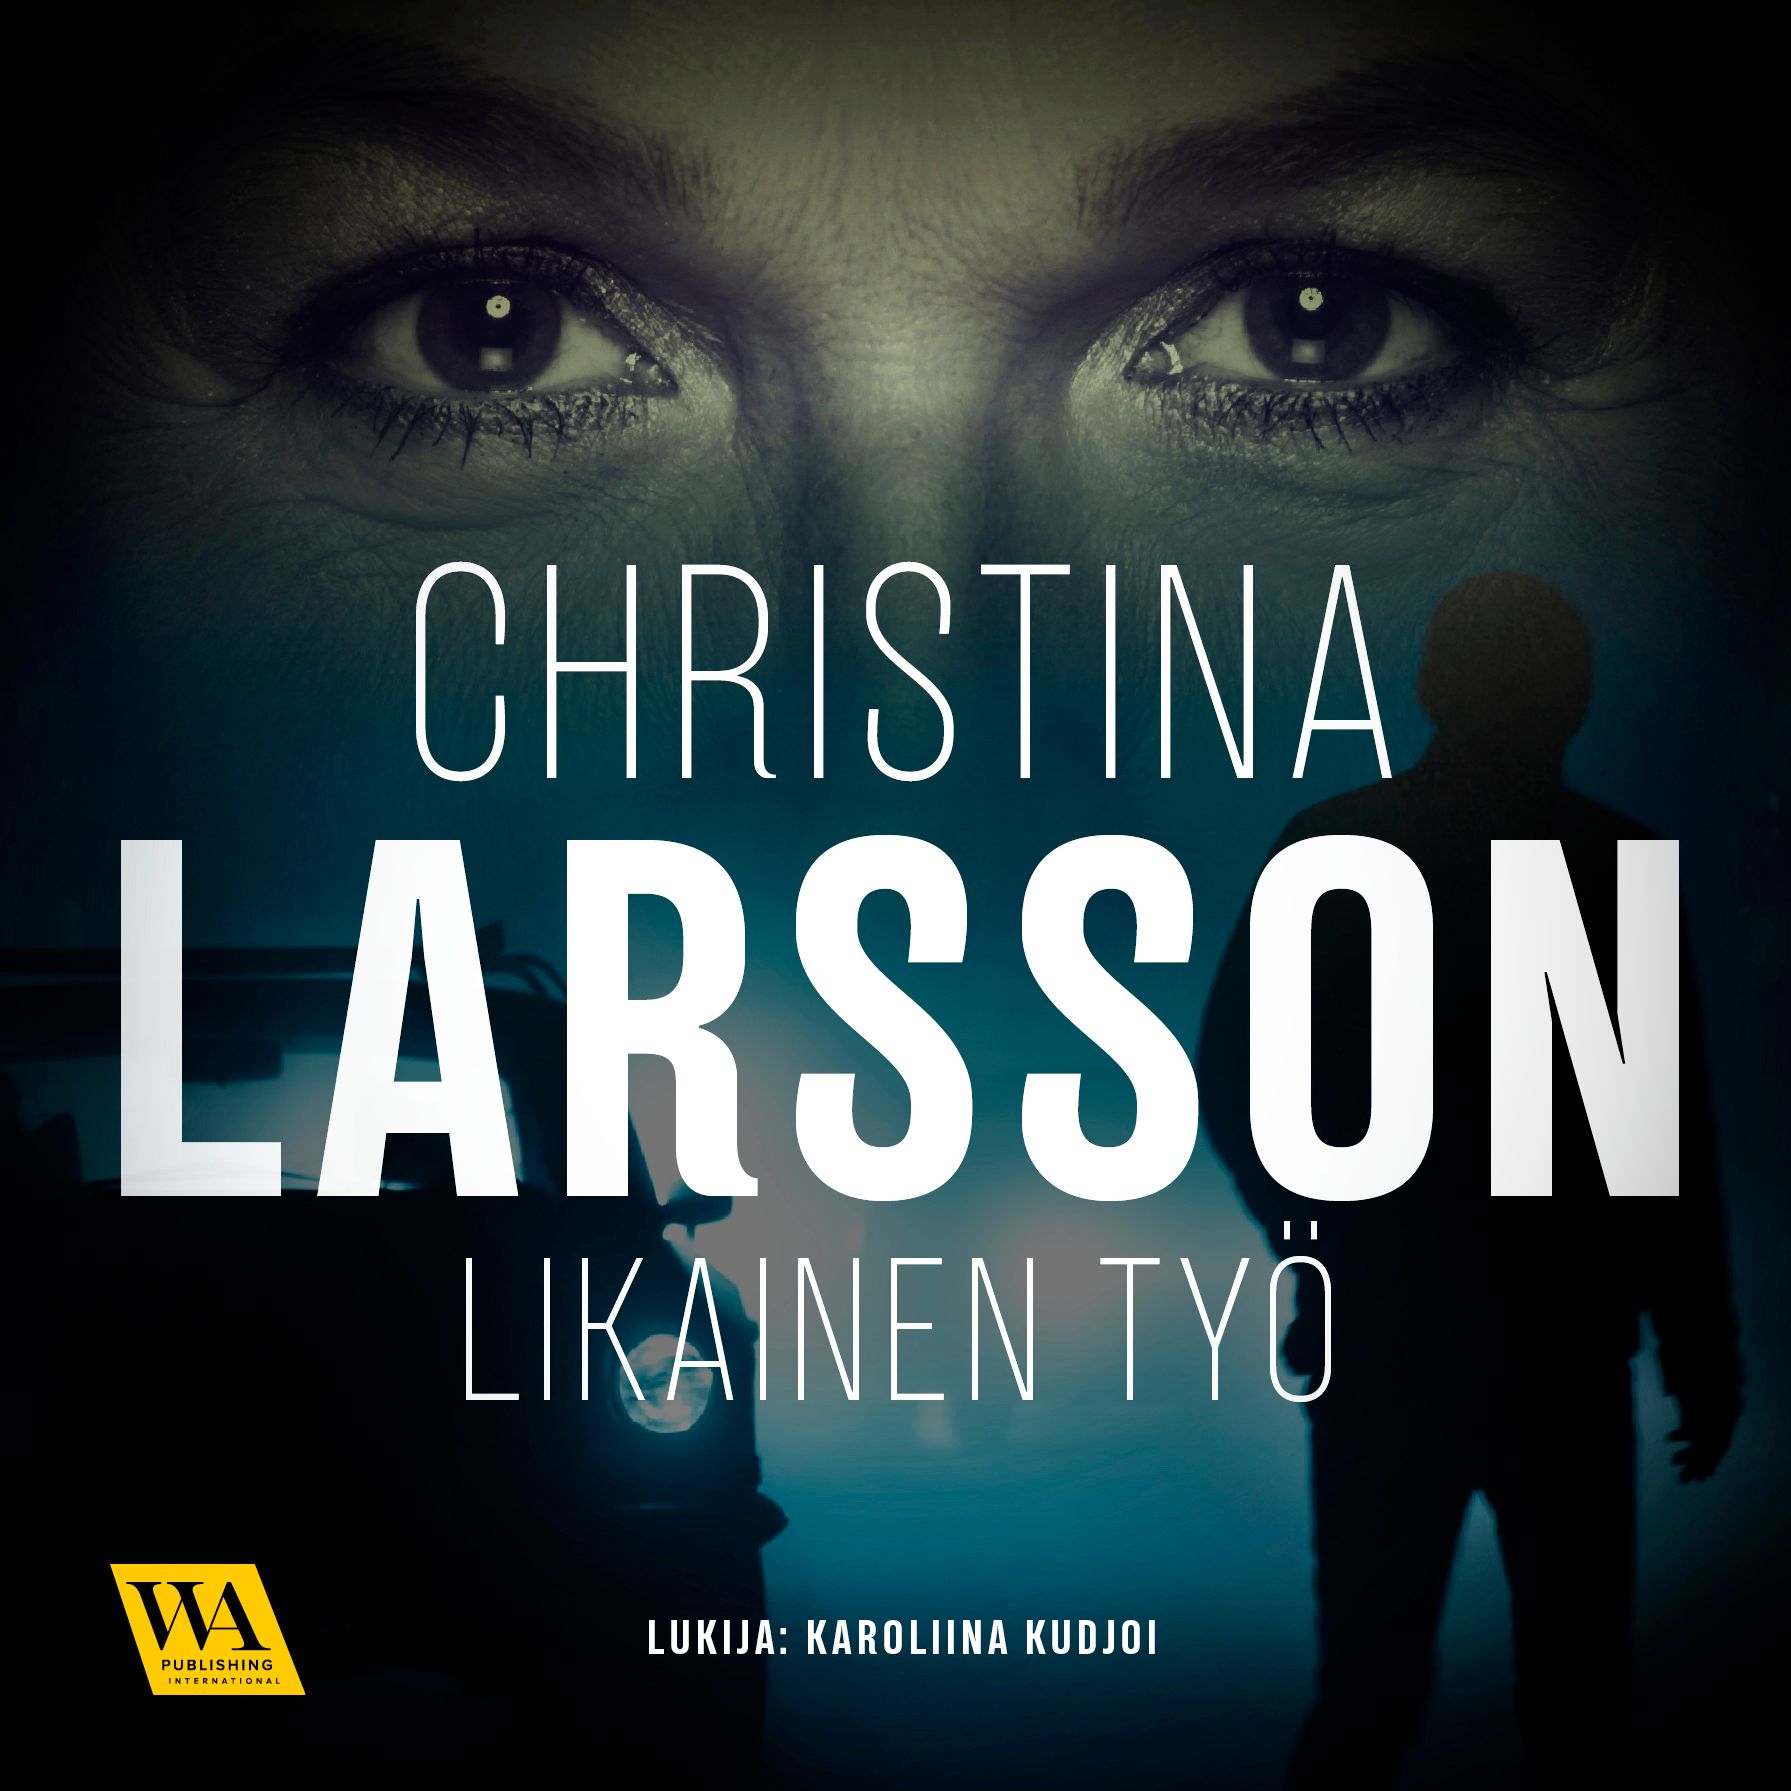 Likainen työ, audiobook by Christina Larsson